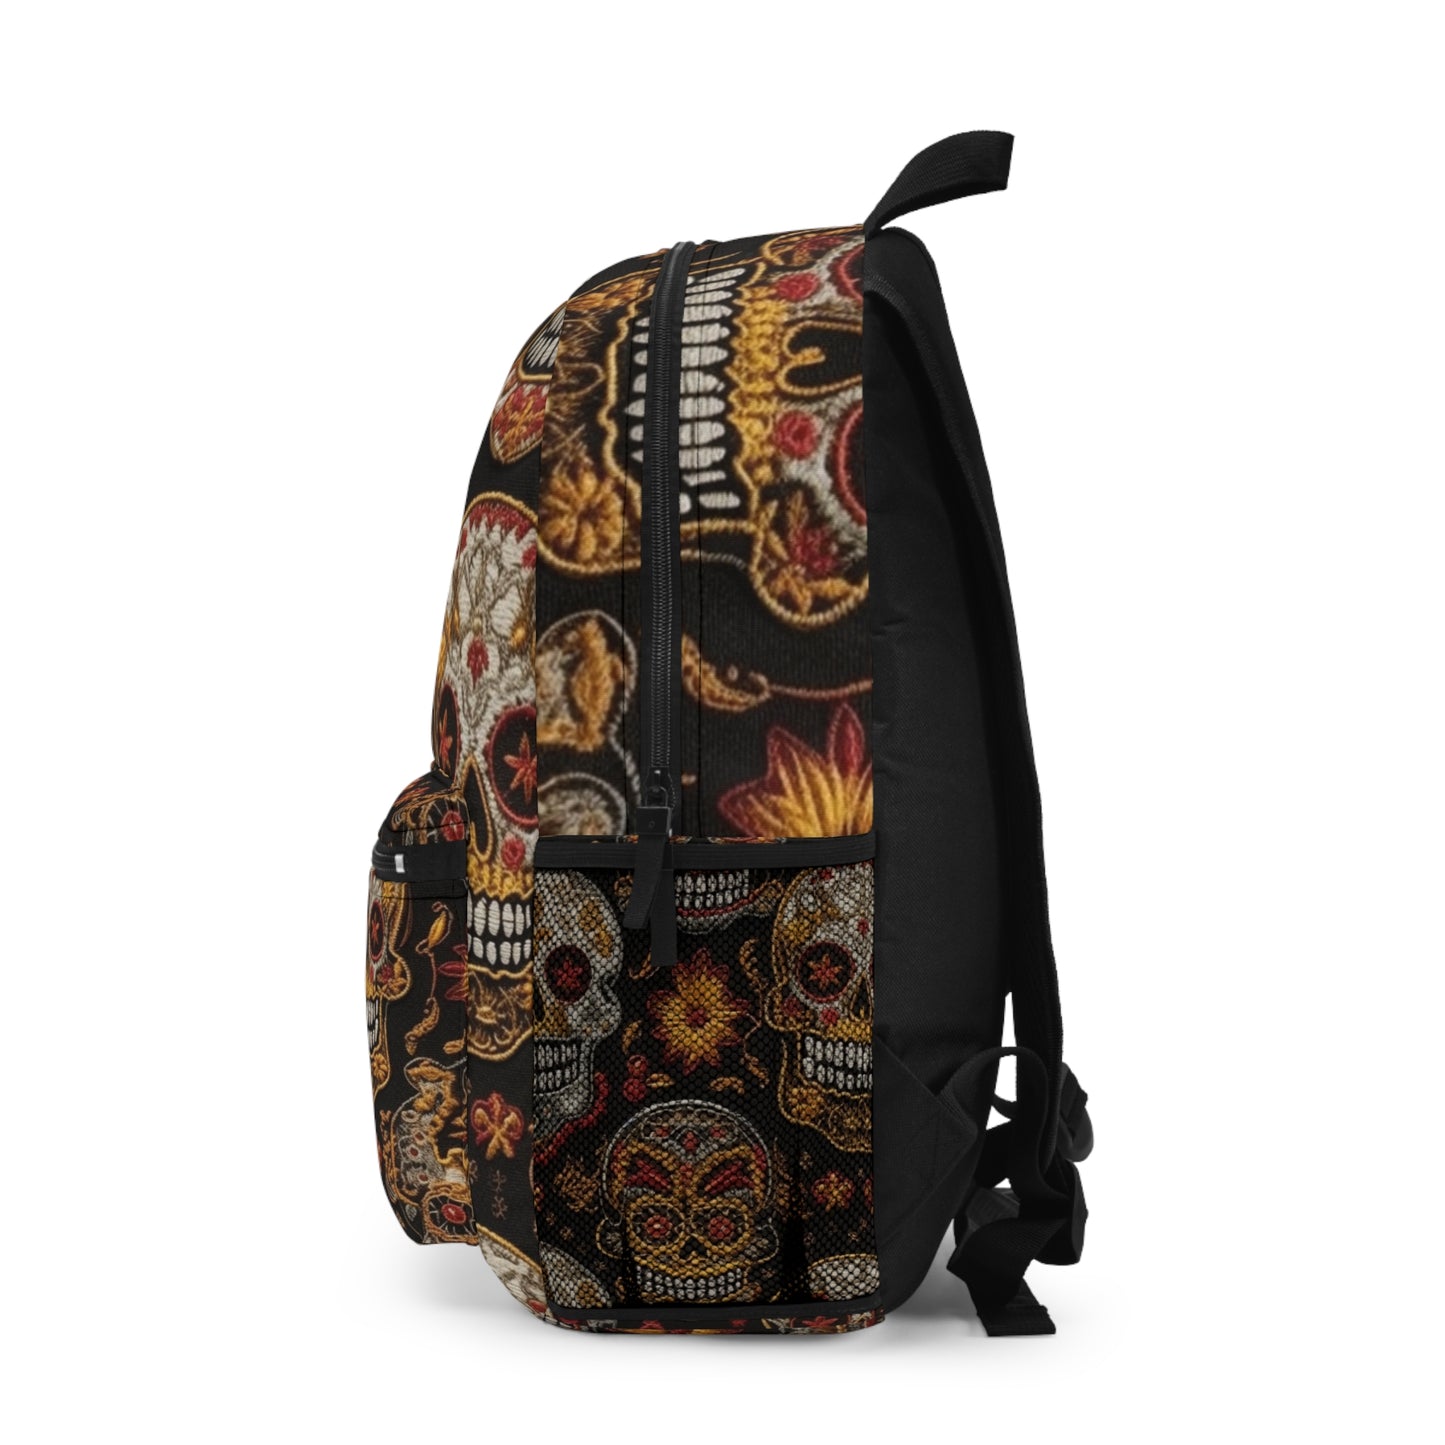 Embroidered Skulls Backpack